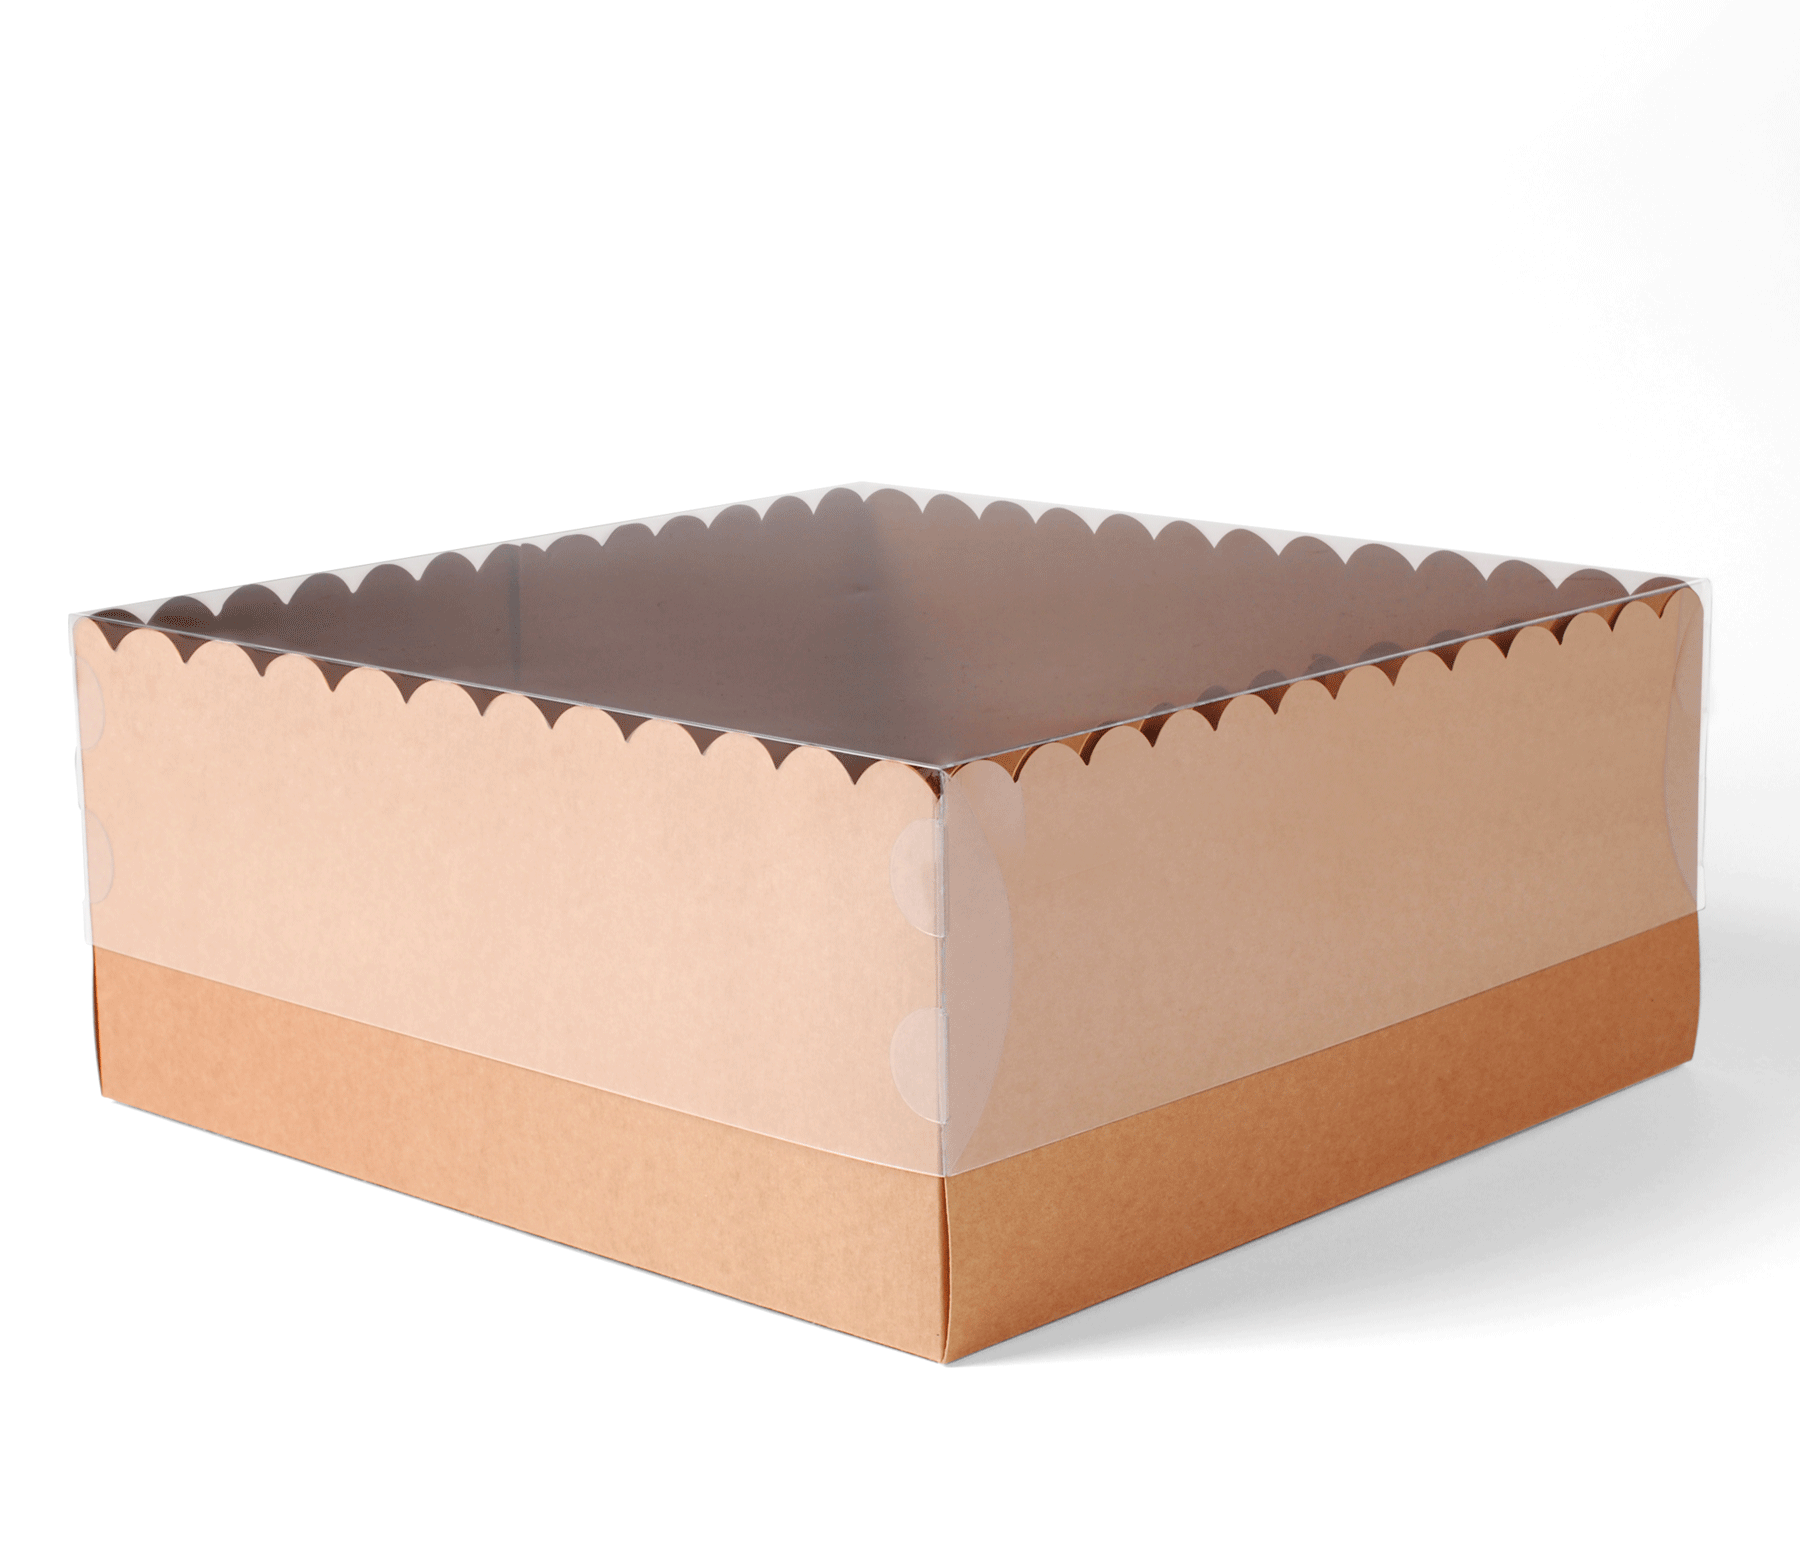 Cajas para tartas: La mejor calidad y entrega en España